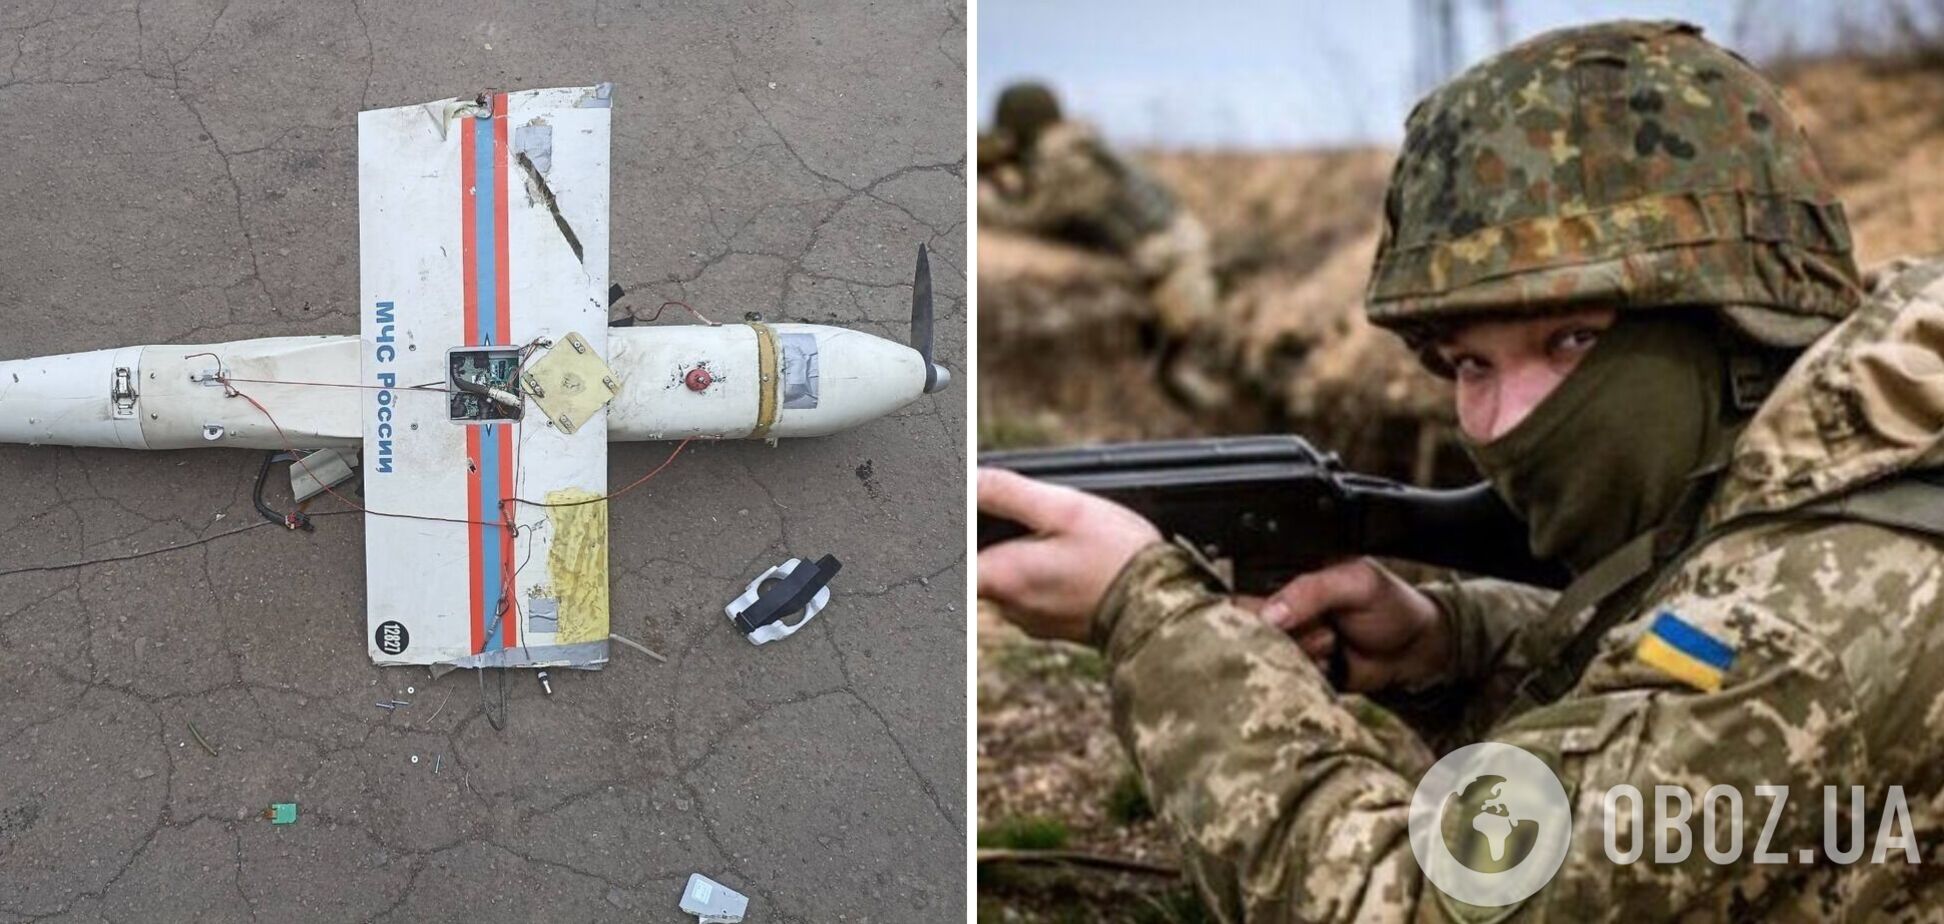 На Донбассе воины-разведчики уничтожили 'птичку' МЧС России. Фото